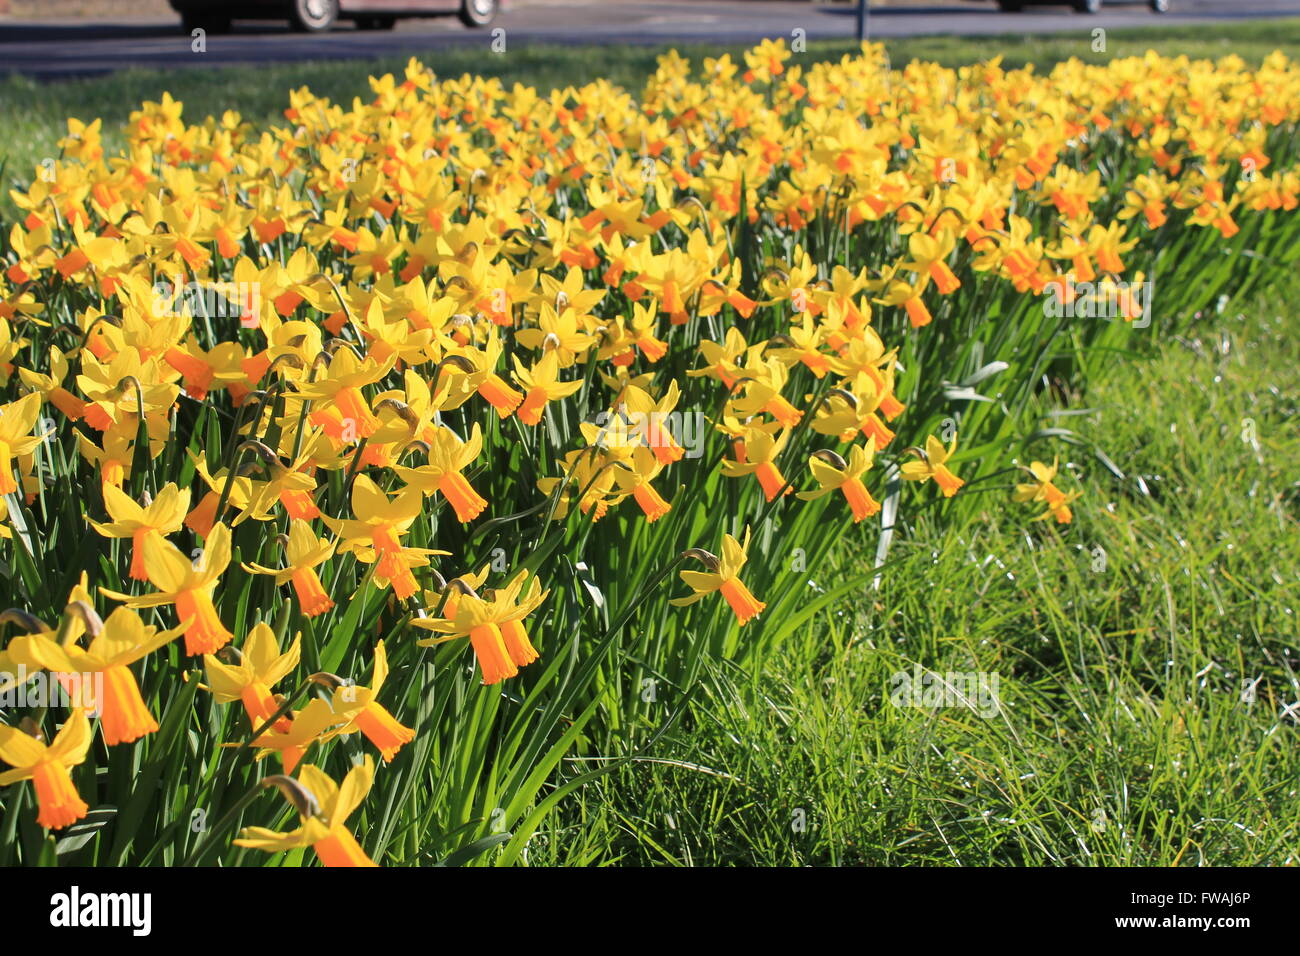 Les jonquilles : un brillant jaune jonquille bienvenue au printemps Banque D'Images